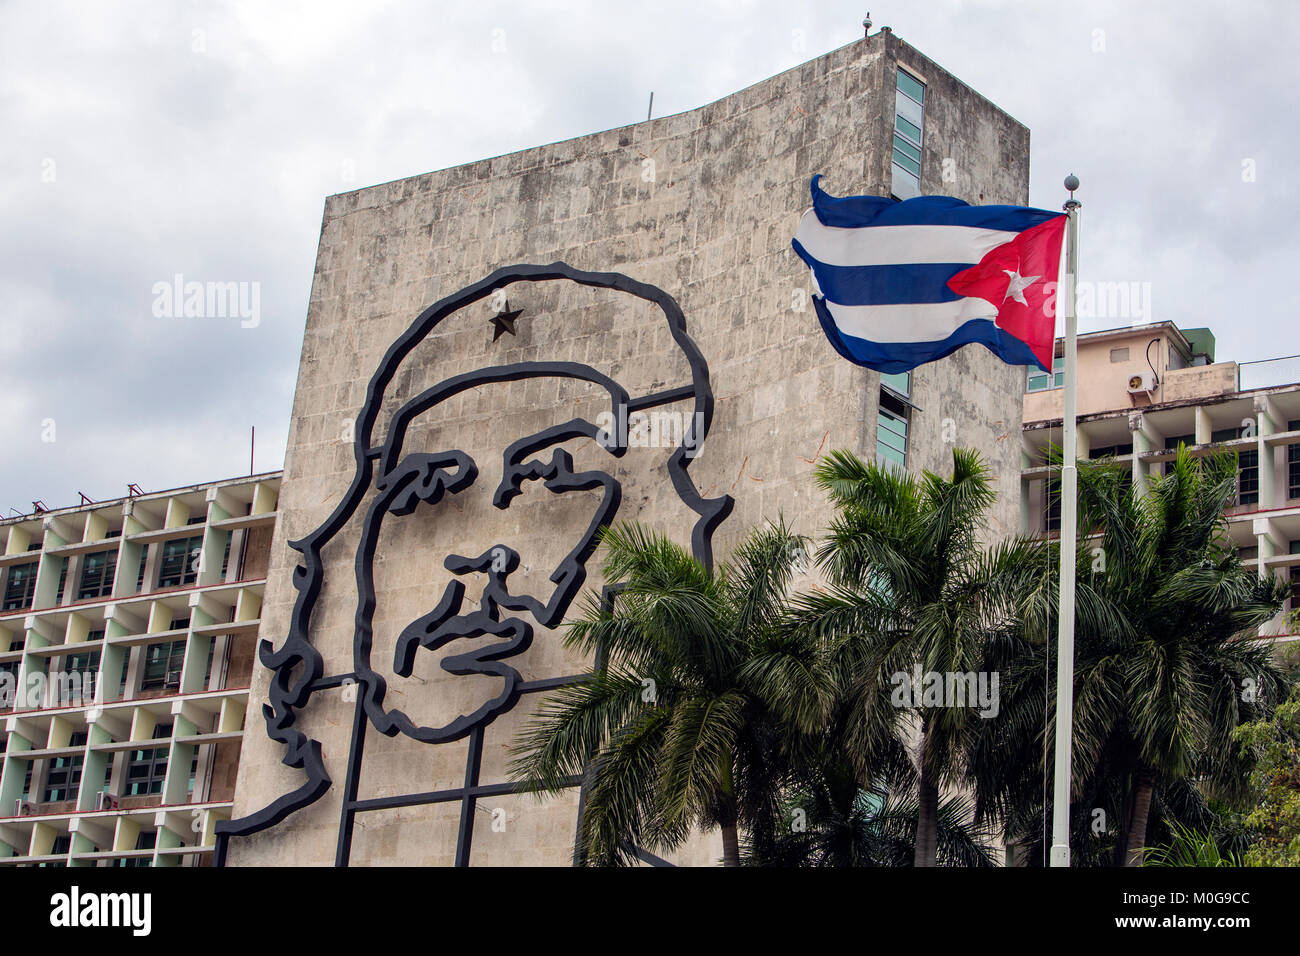 Ministerio del Interior aka Che Guevara building in Havana, Cuba Stock Photo